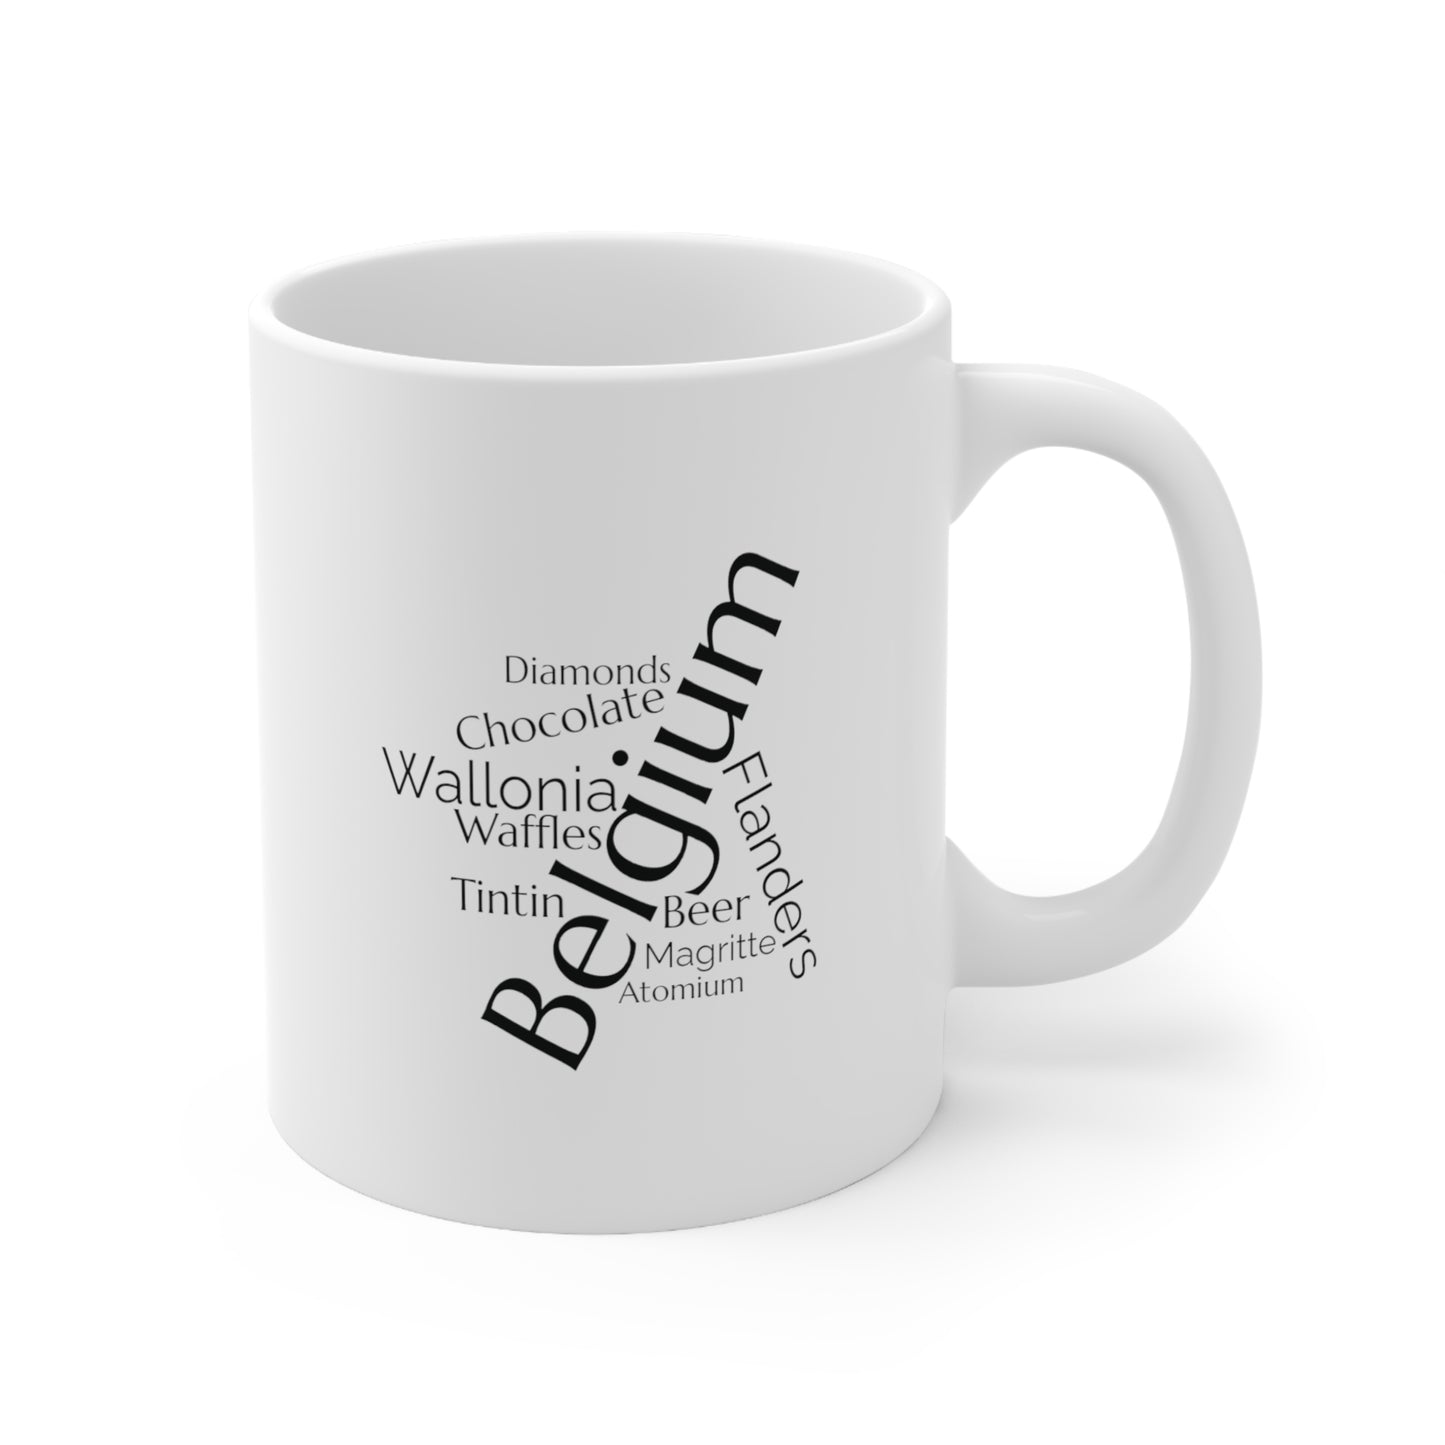 Belgium word mug, local mug, geography mug, gift, mug, coffee cup, word mug, wordcloud mug, christmas gift, birthday gift